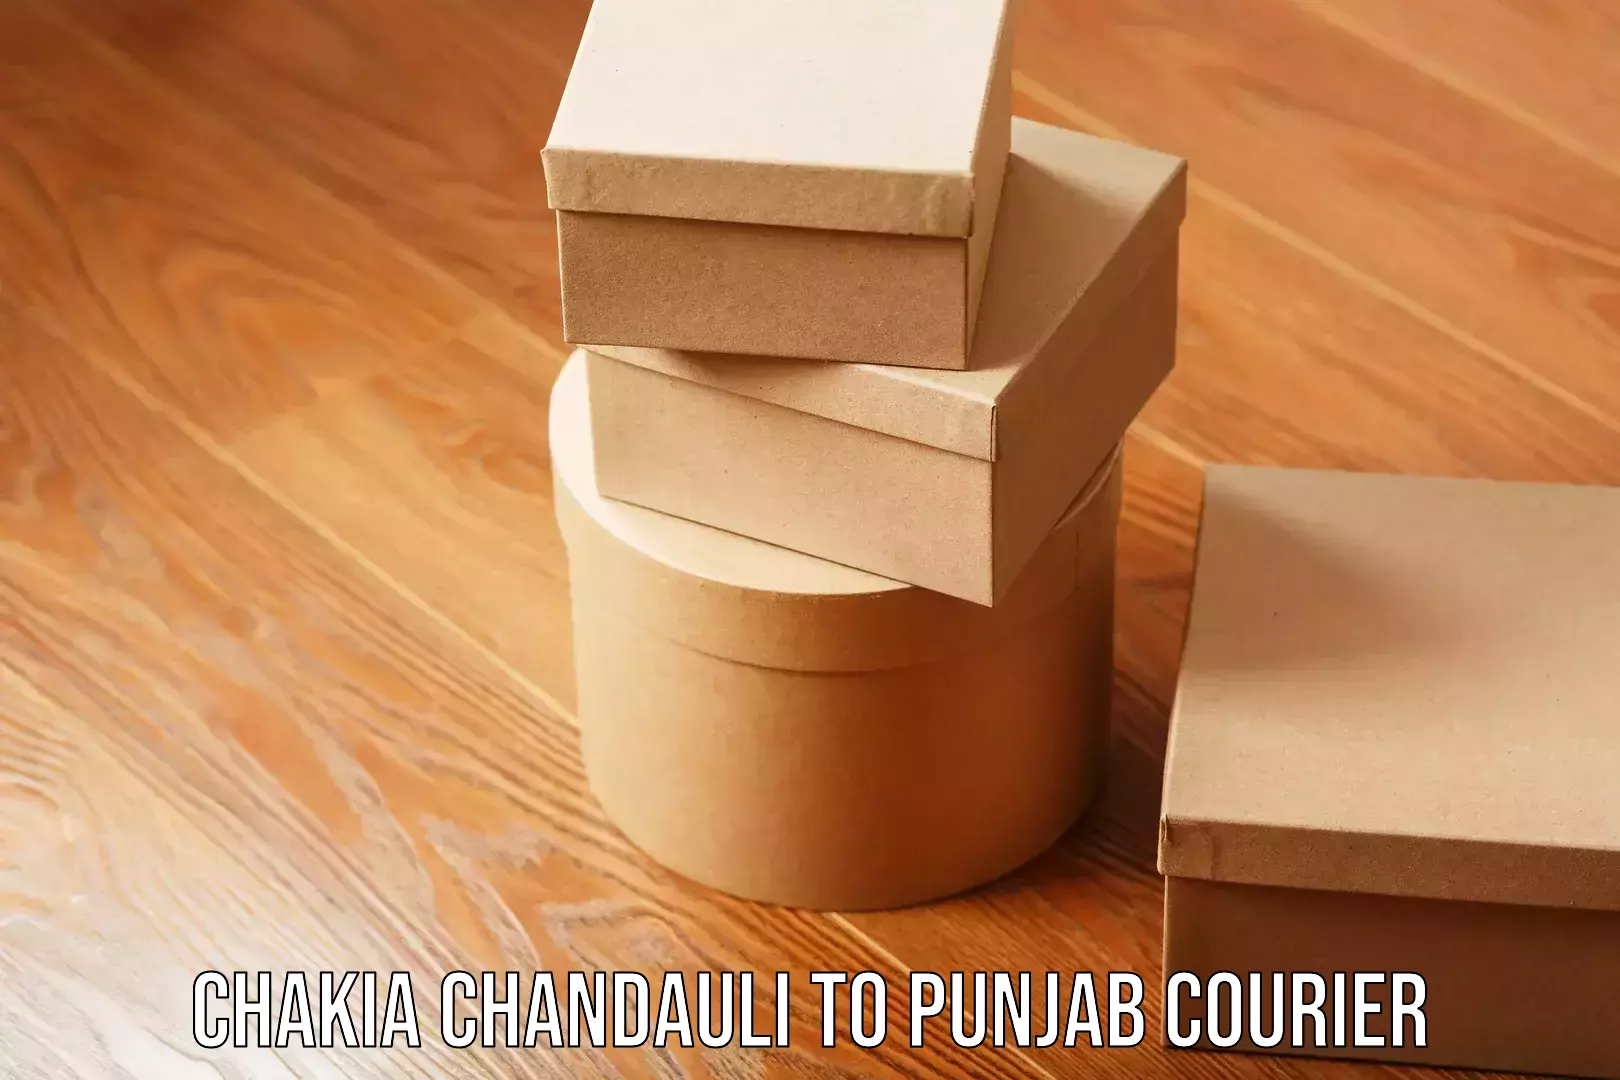 E-commerce fulfillment Chakia Chandauli to Punjab